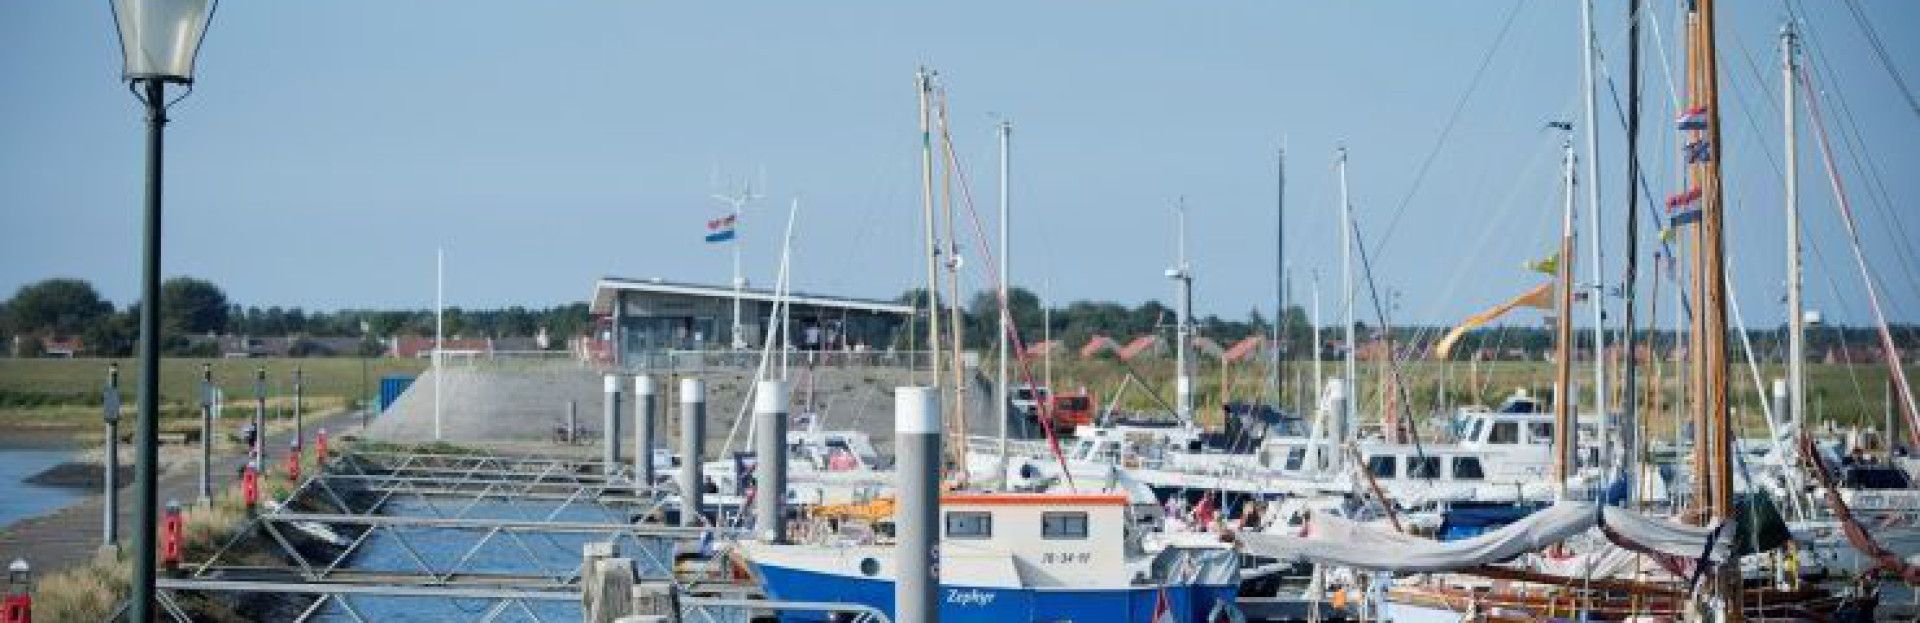 Jachthaven Schiermonnikoog